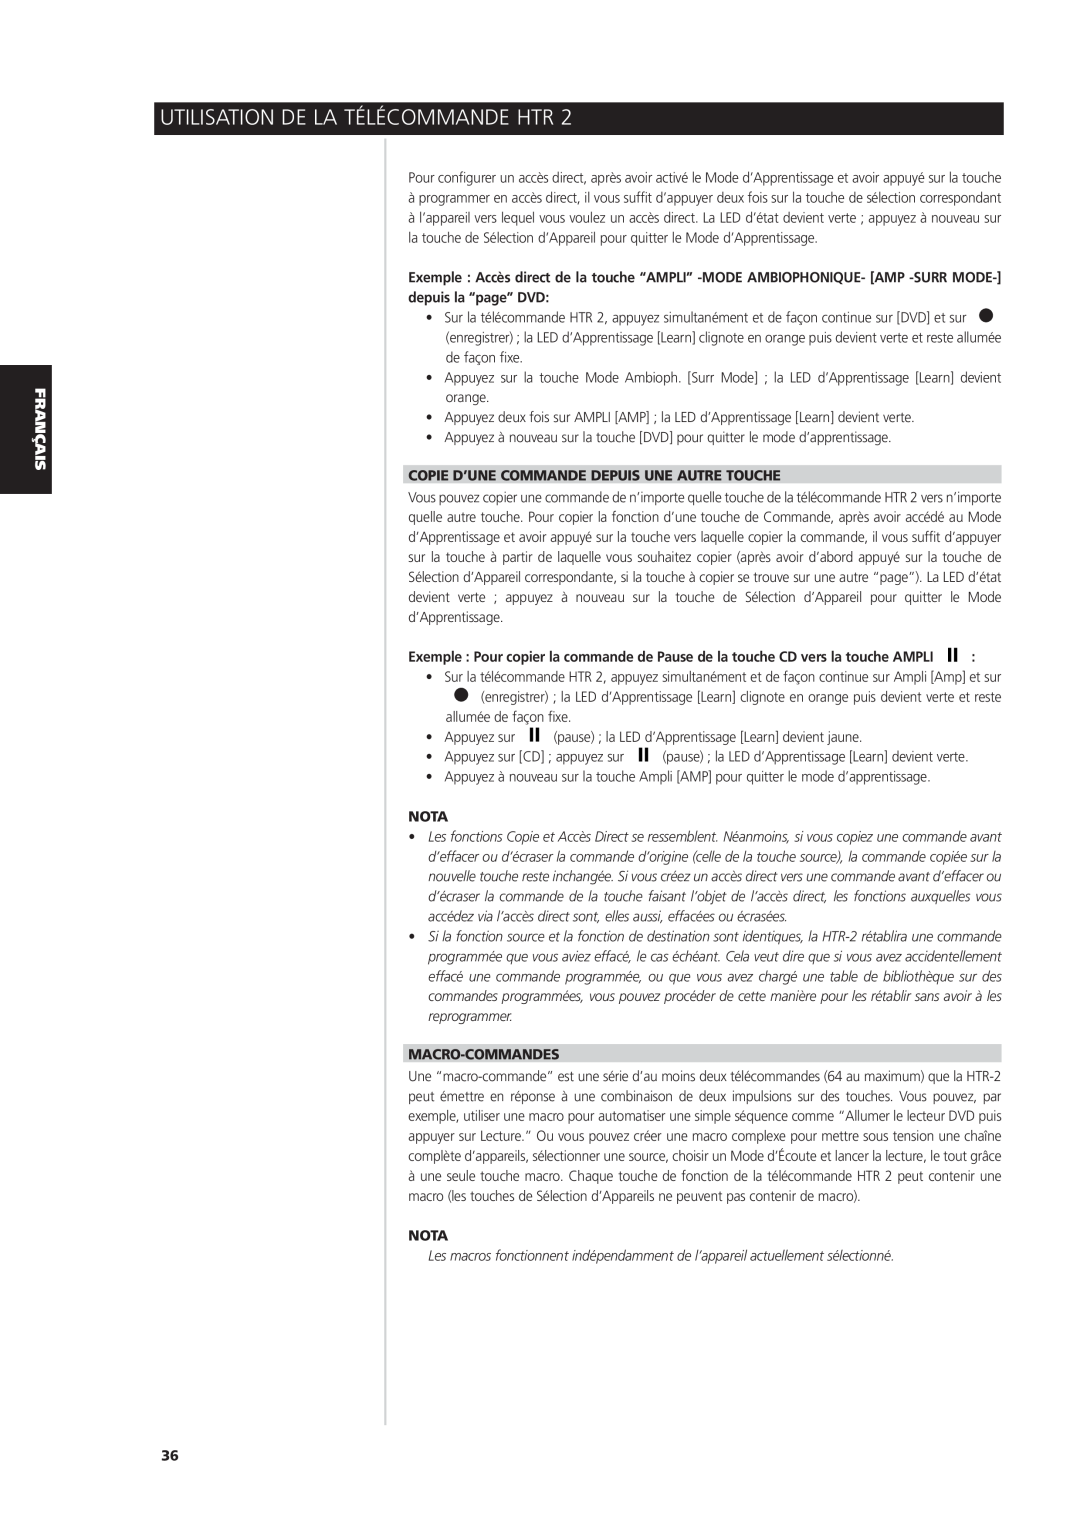 NAD S170iAV Copie D’Une Commande Depuis Une Autre Touche, Macro-Commandes, Utilisation De La Télécommande Htr, Nota 